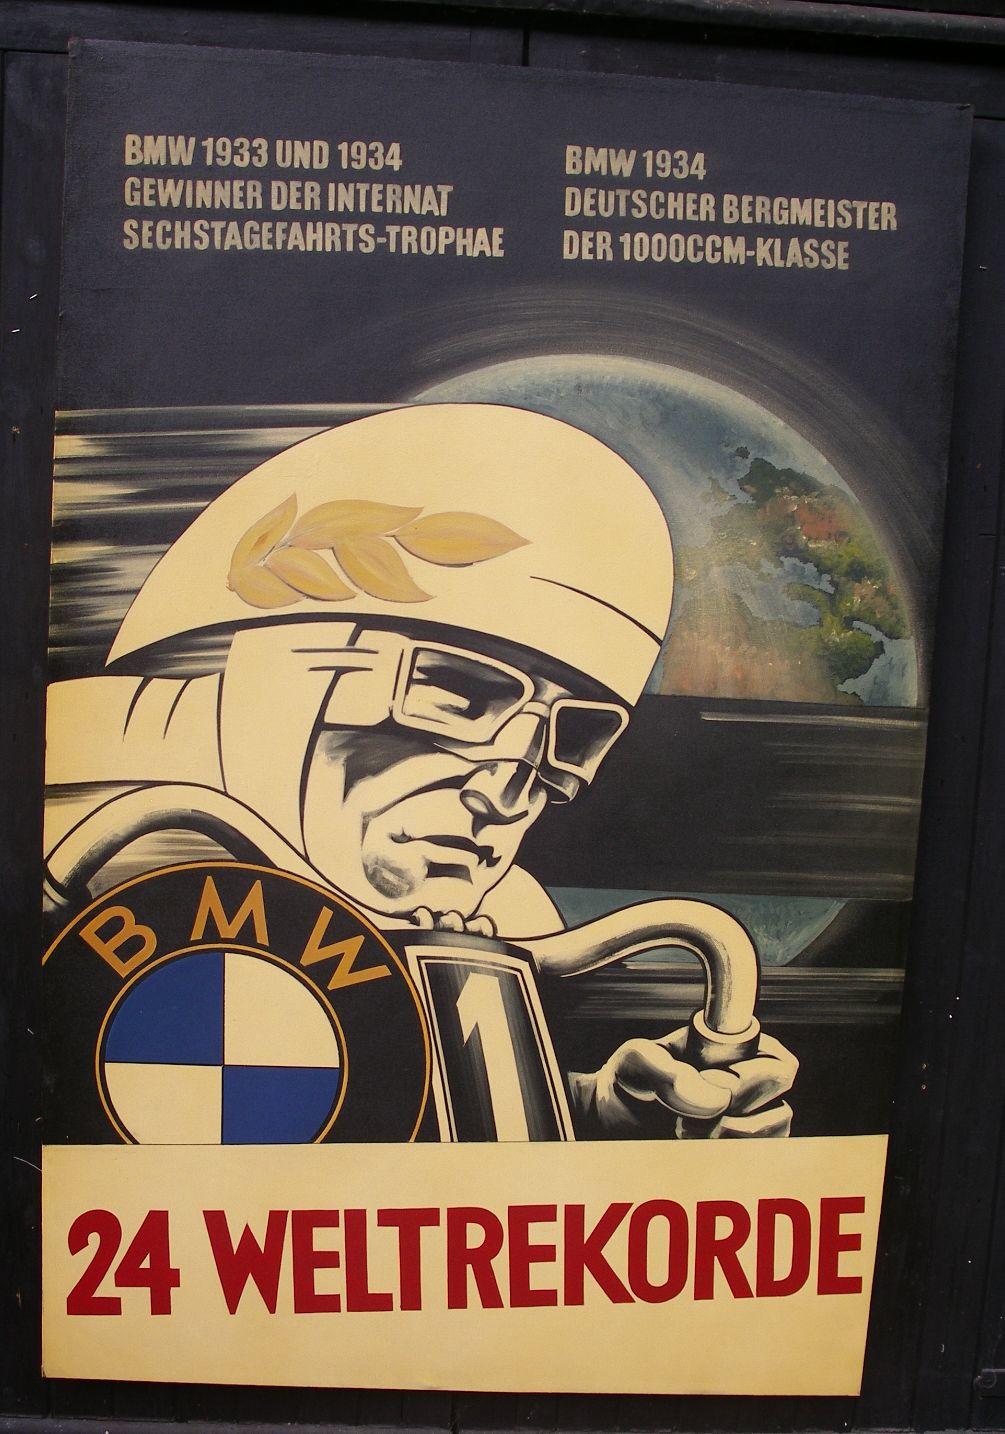 BMW Poster 1934 - 24 Weltrekorde